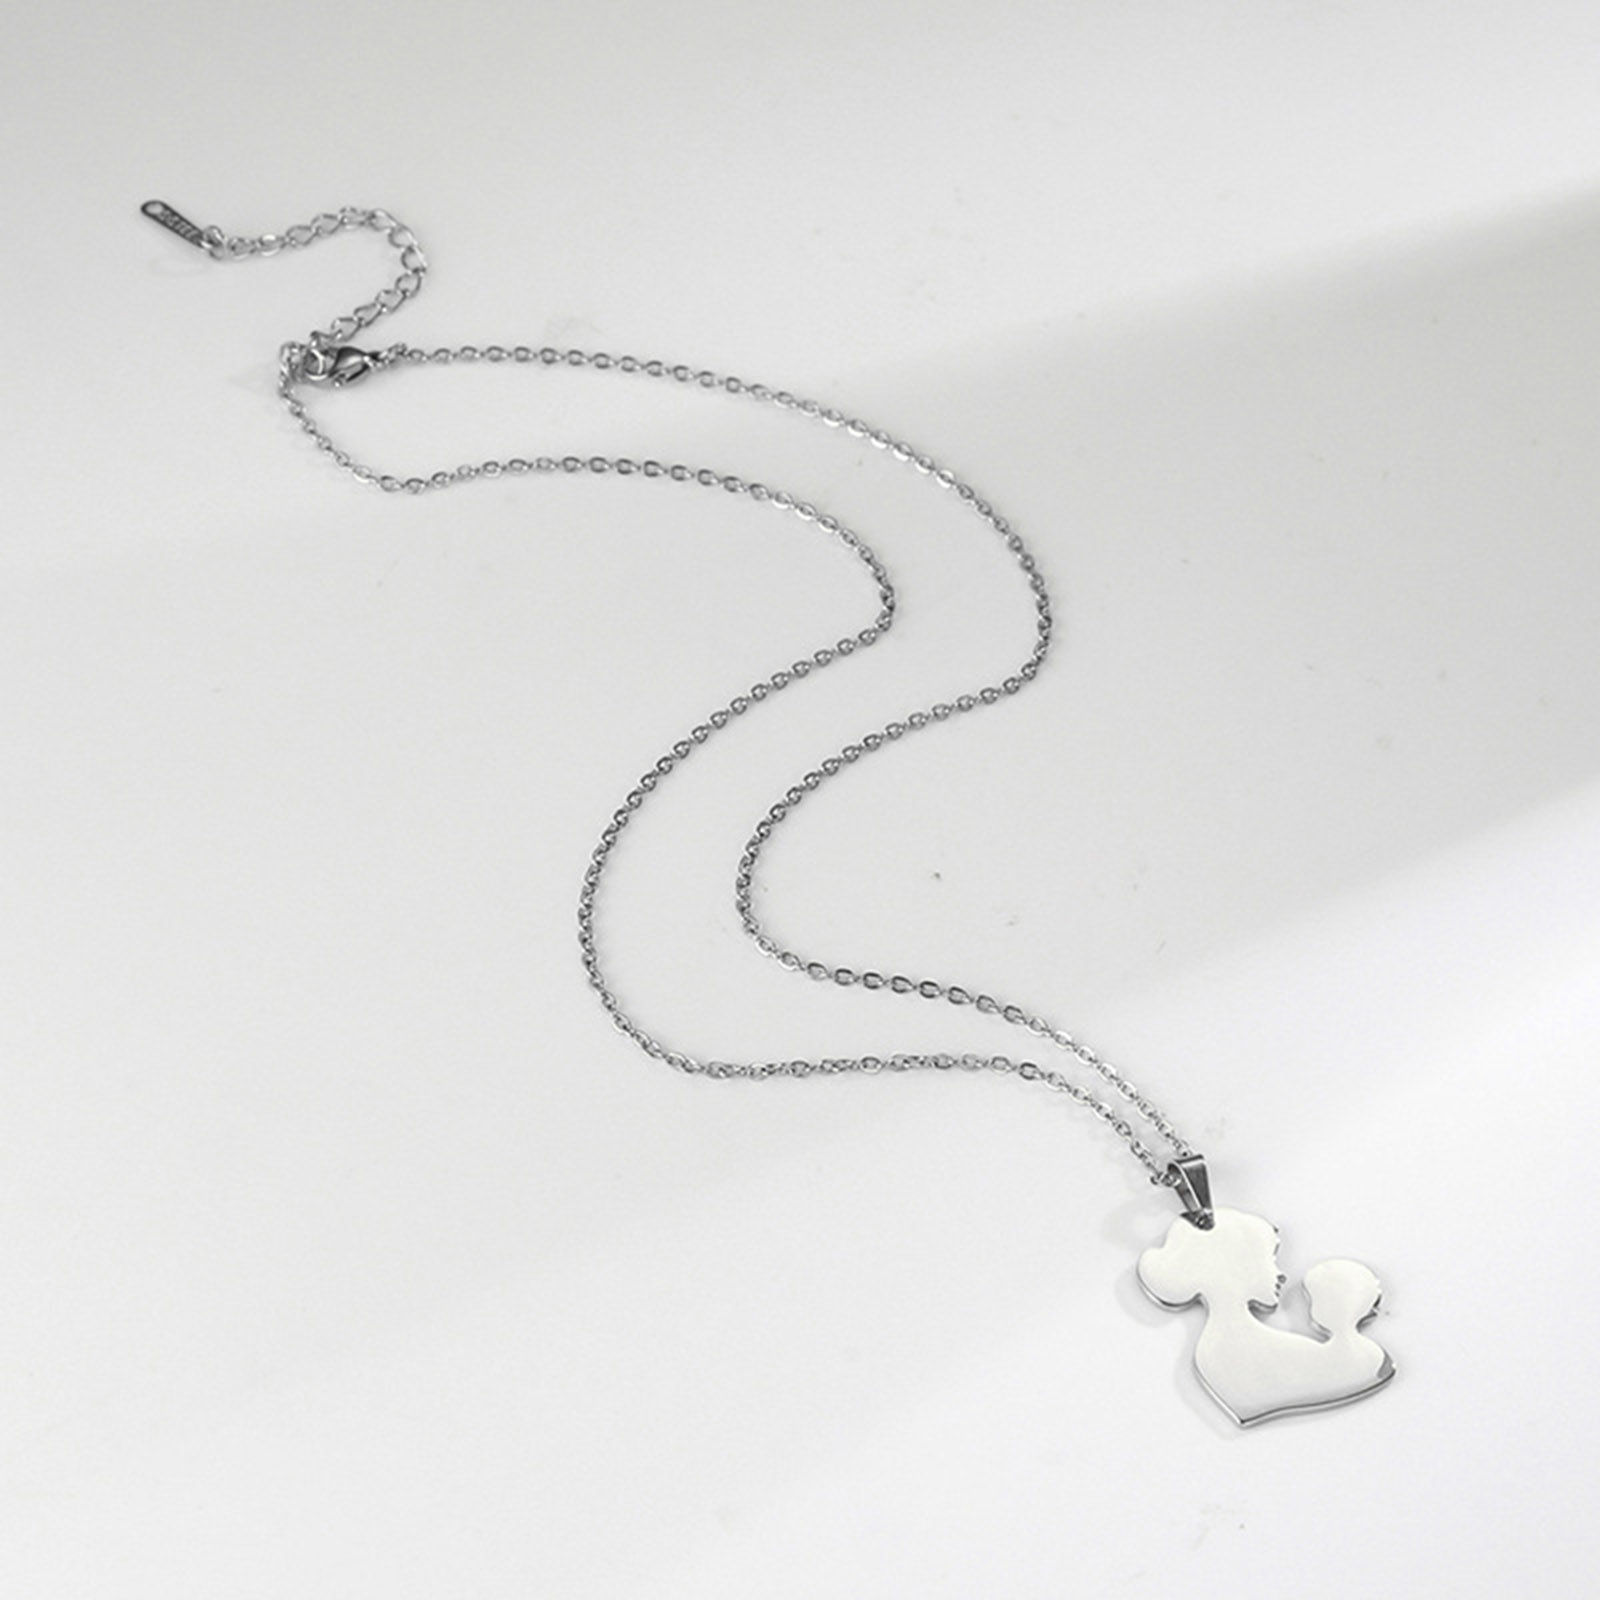 Bild von Edelstahl Muttertag Gliederkette Kette Halskette Bunt Mutter & Kind 45cm lang, 1 Strang